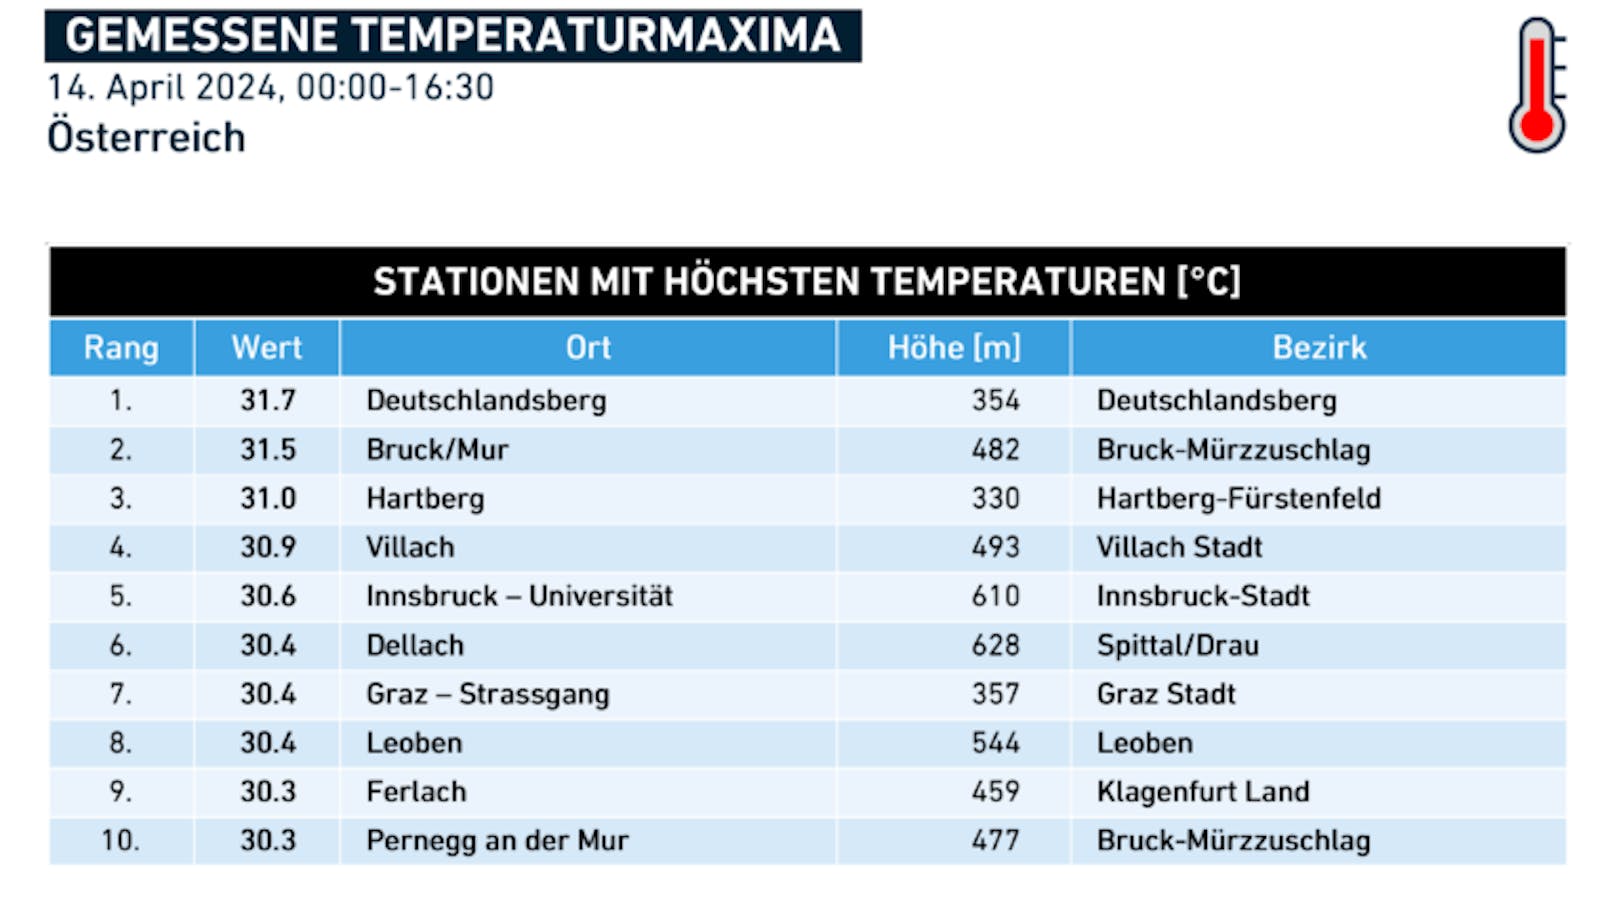 Stationen mit höchsten gemessenen Temperaturen am Sonntag, den 14. April 2024